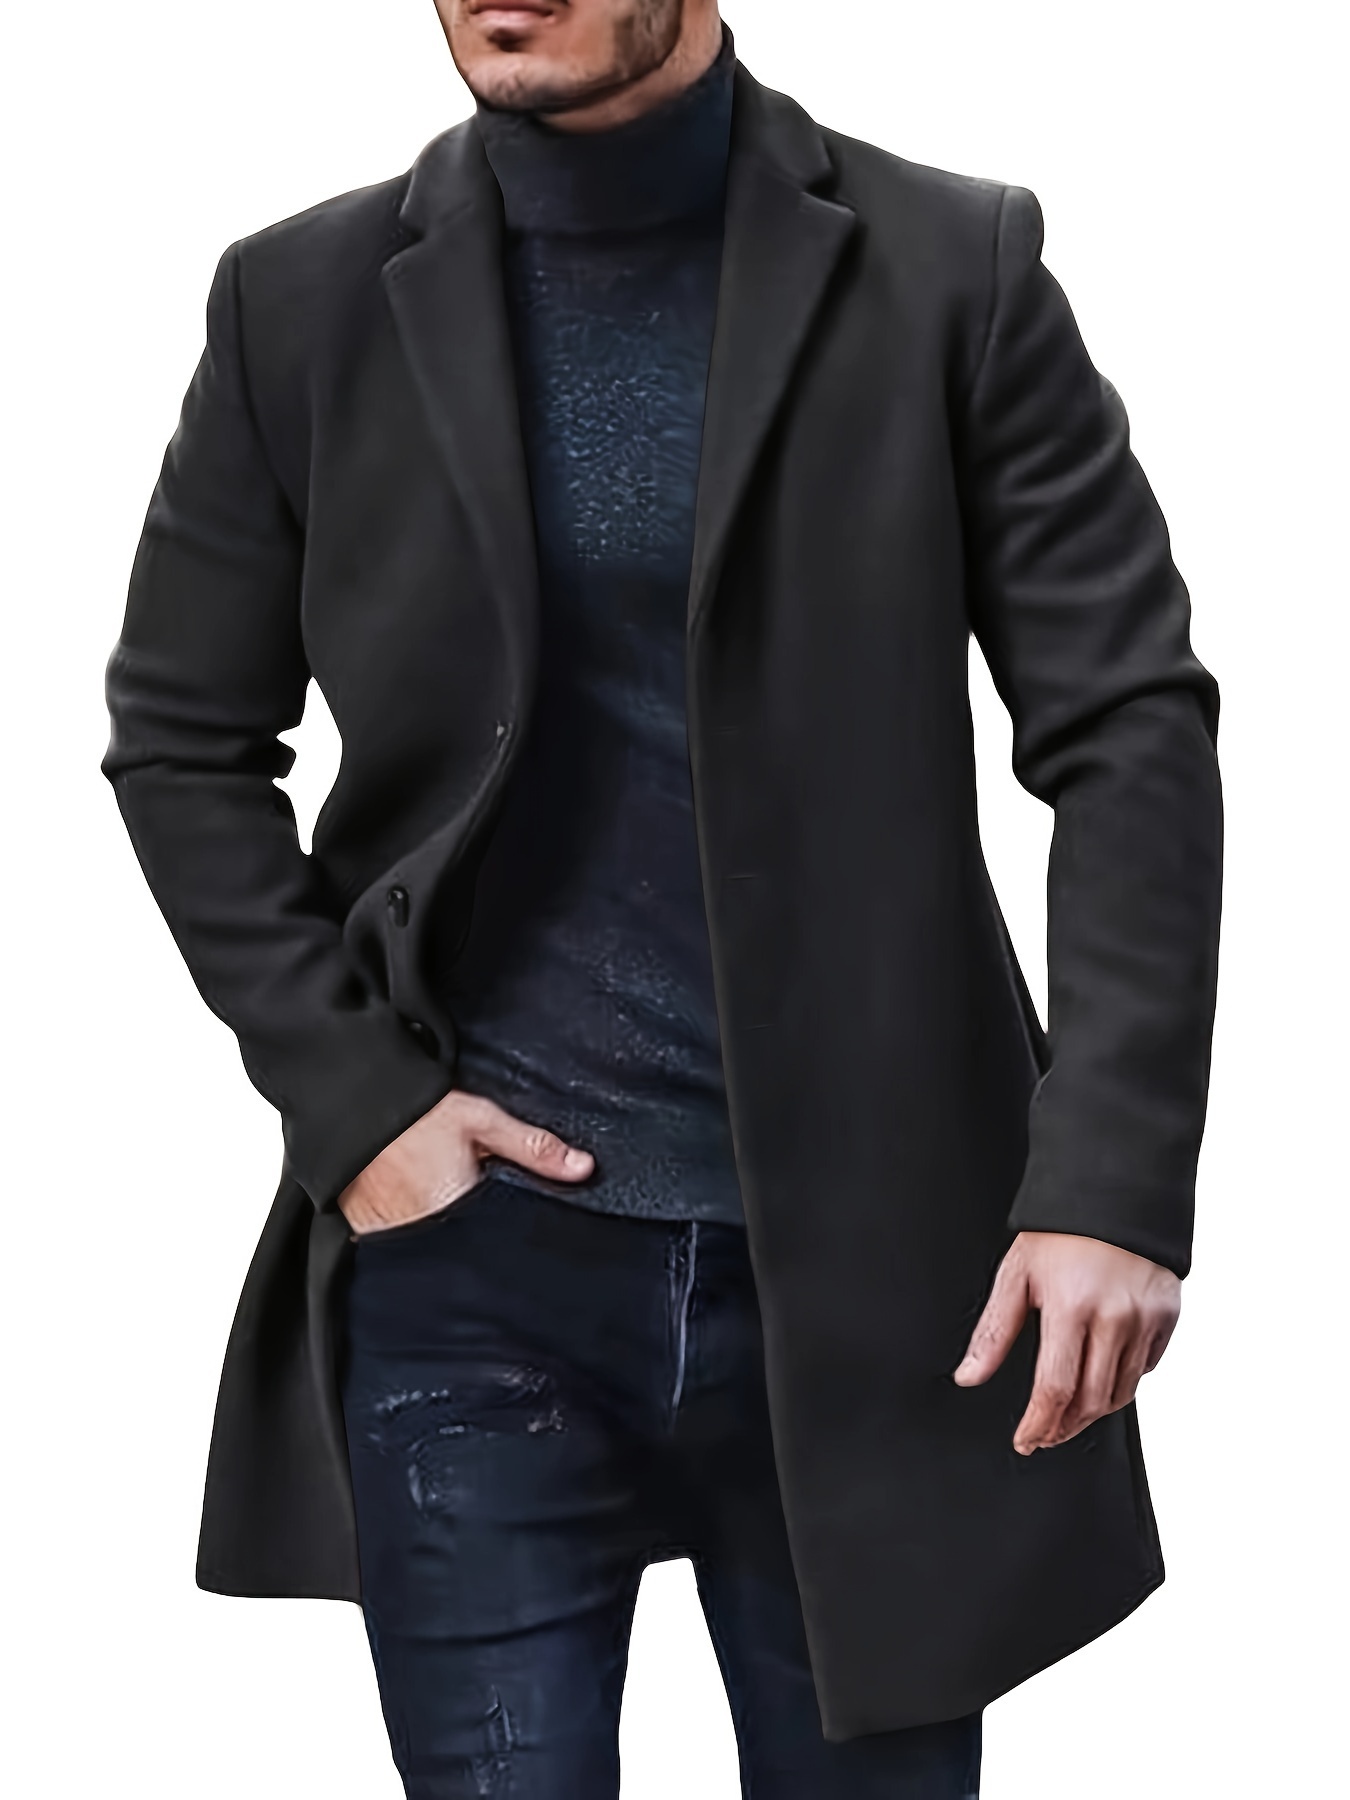 Men's Winter Trench Coat Long Jacket Lapel Neck Outwear Single